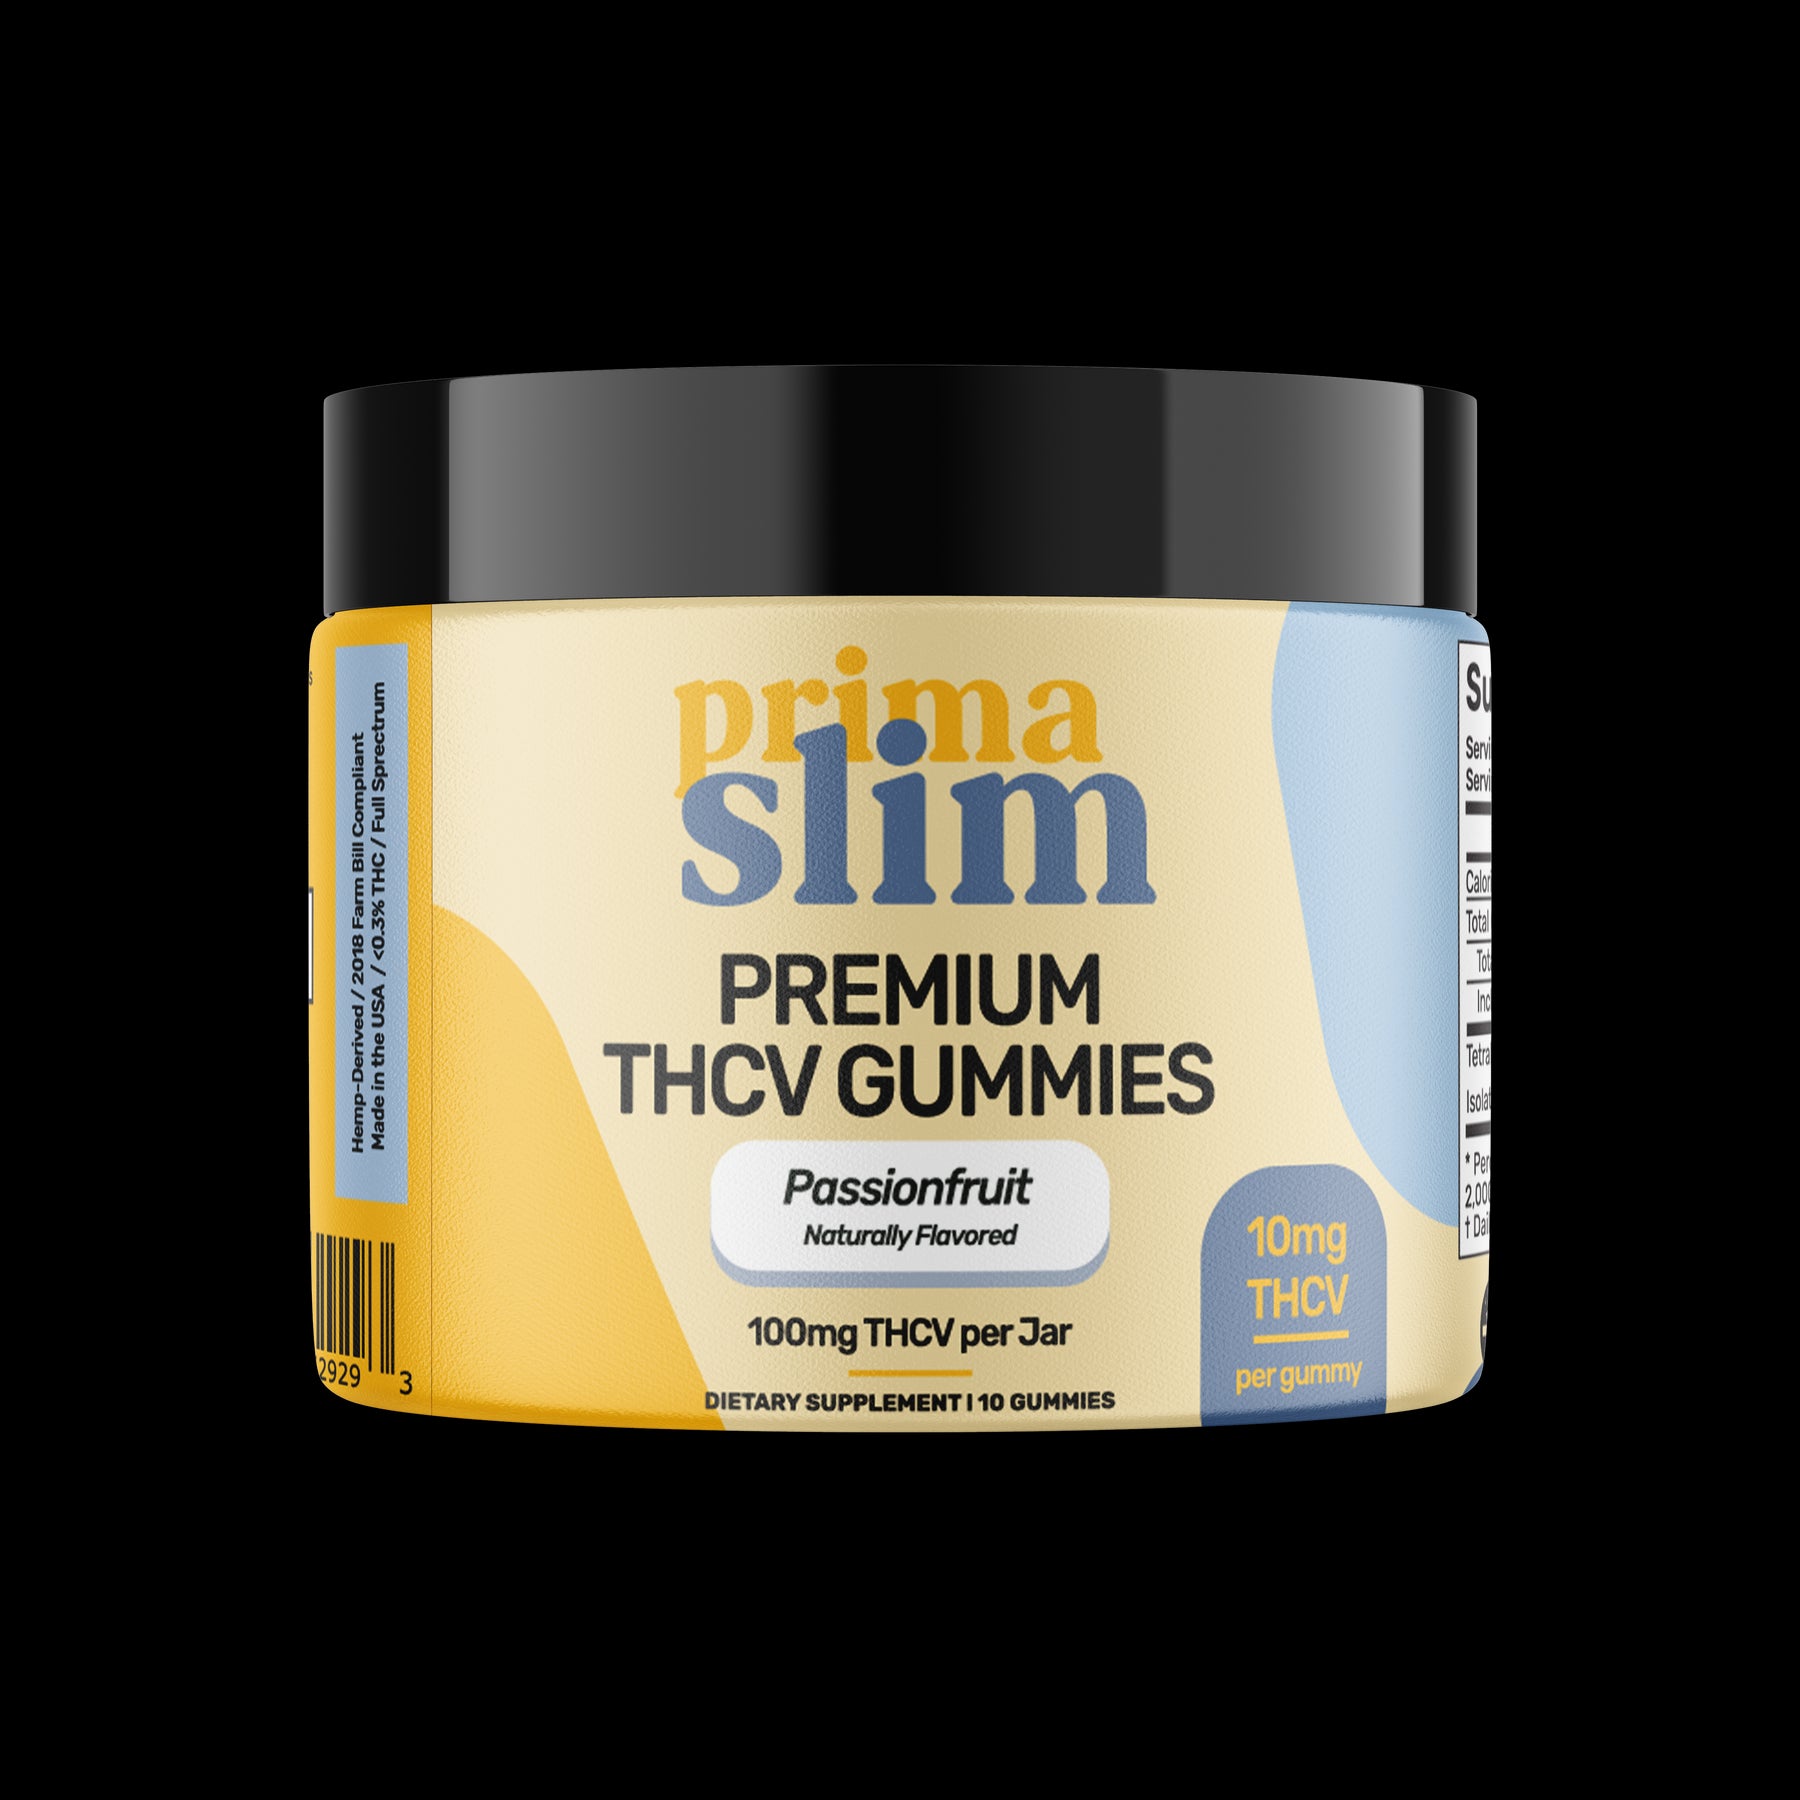 PrimaSlim Premium THCV Gummies Passionfruit 10mg THC